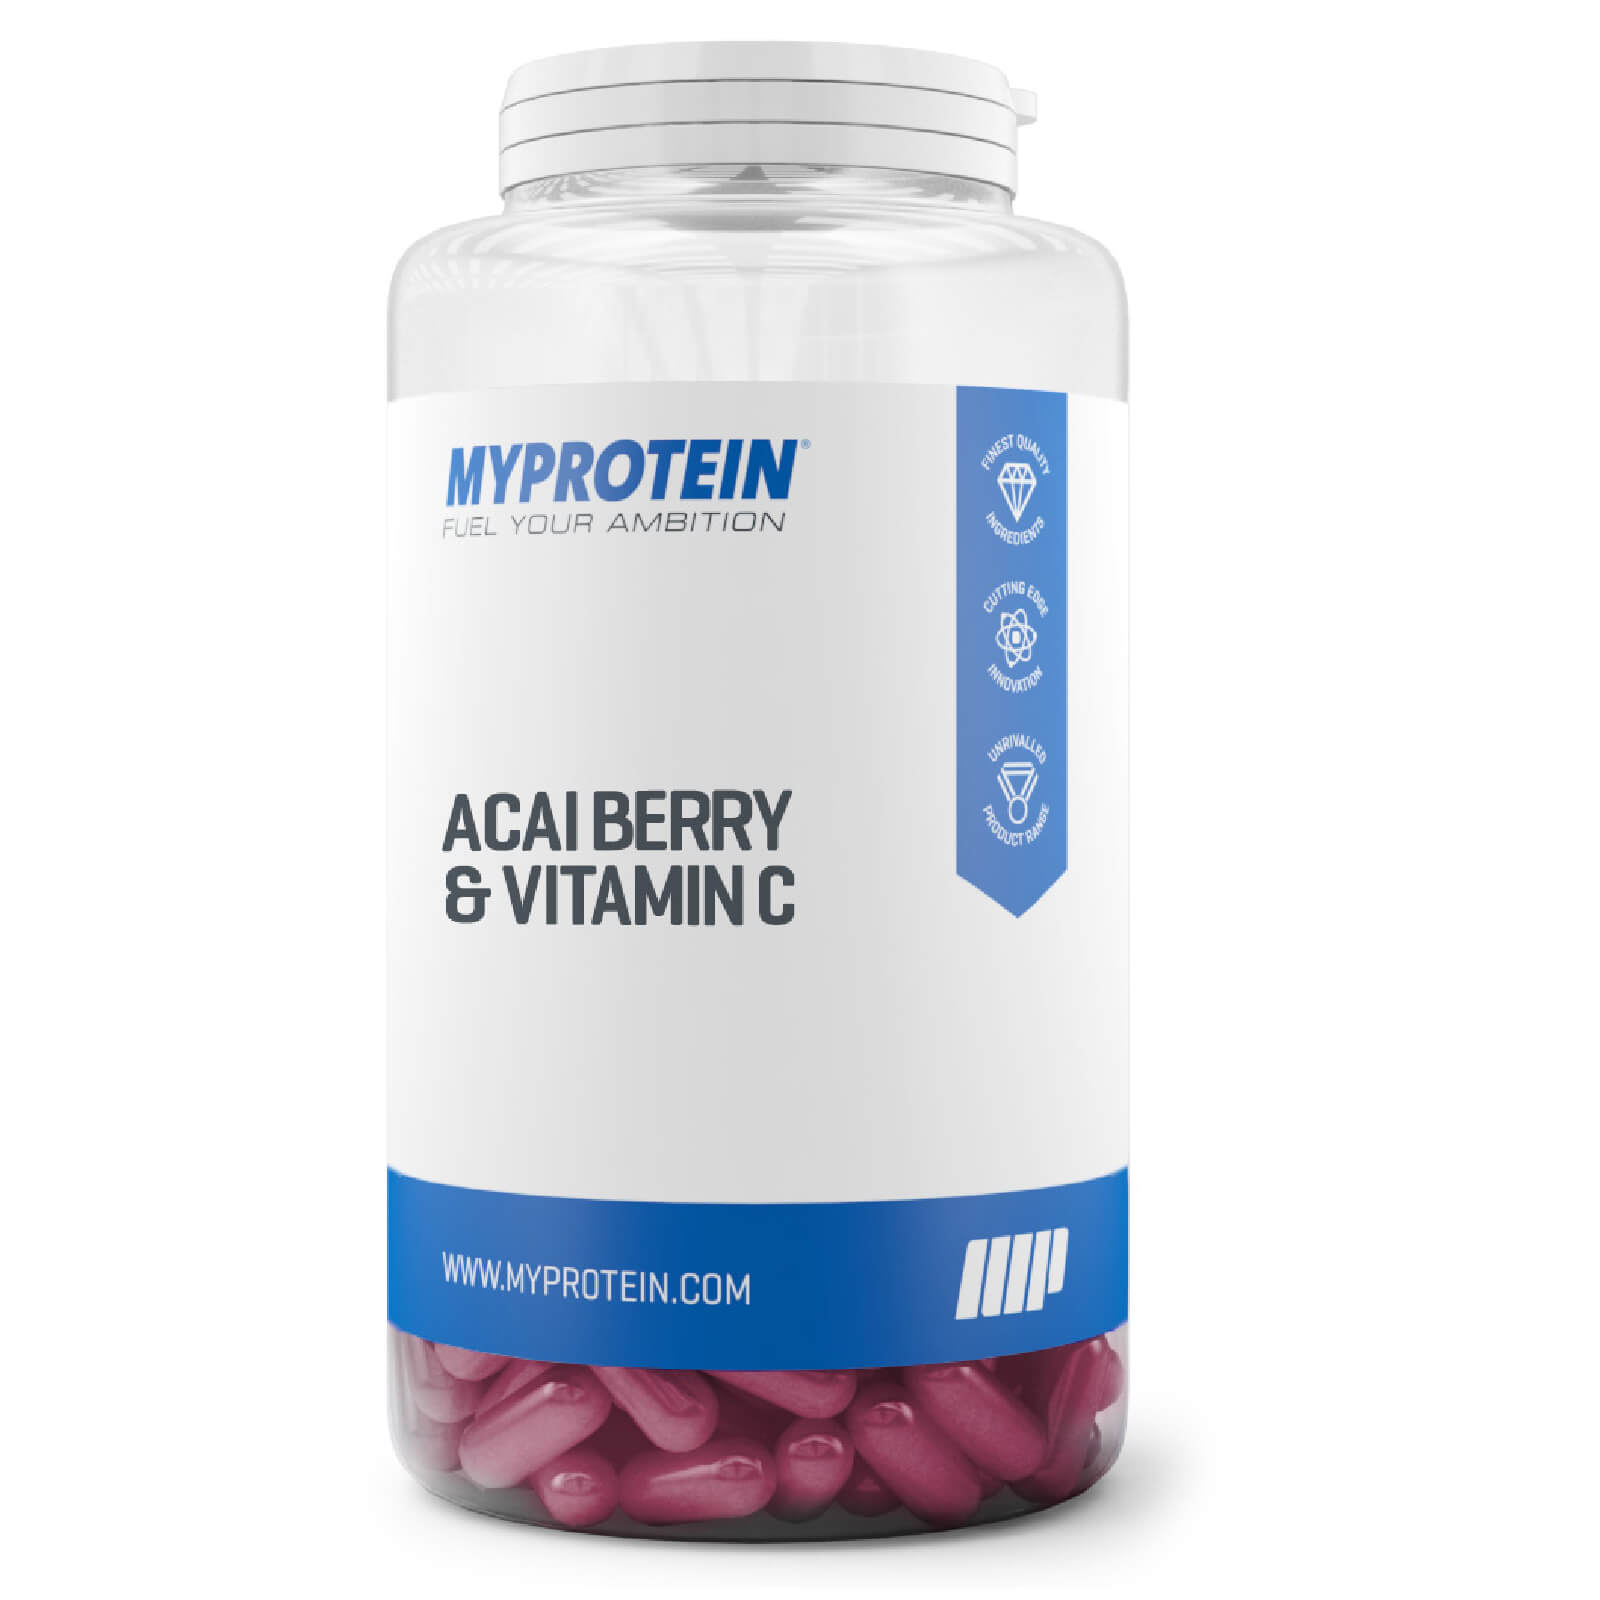 Myprotein Acai Berry & Vitamin C Capsule